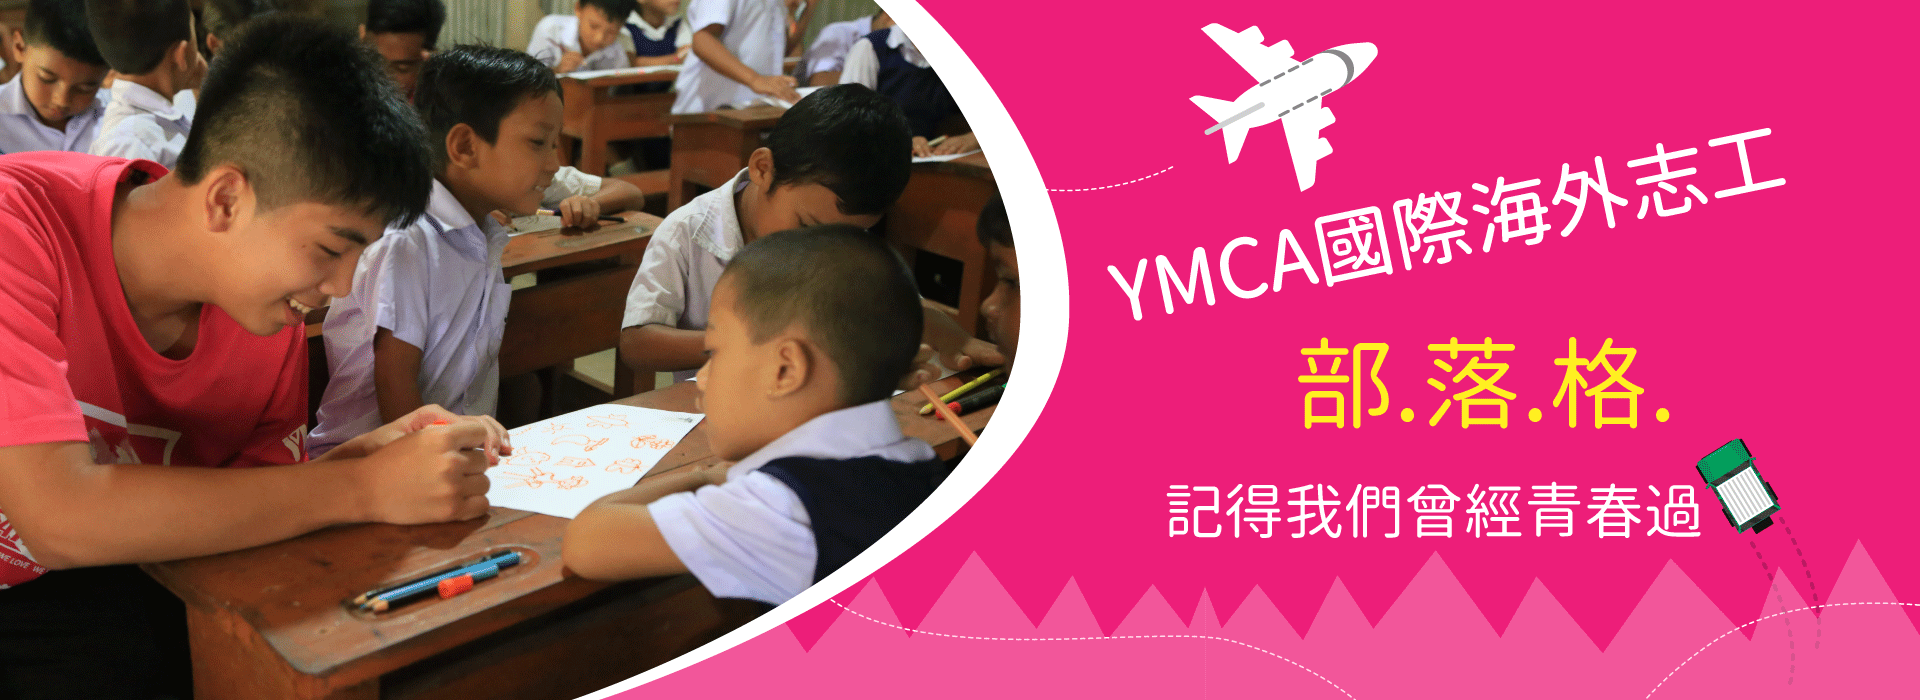 YMCA國際志工部落格